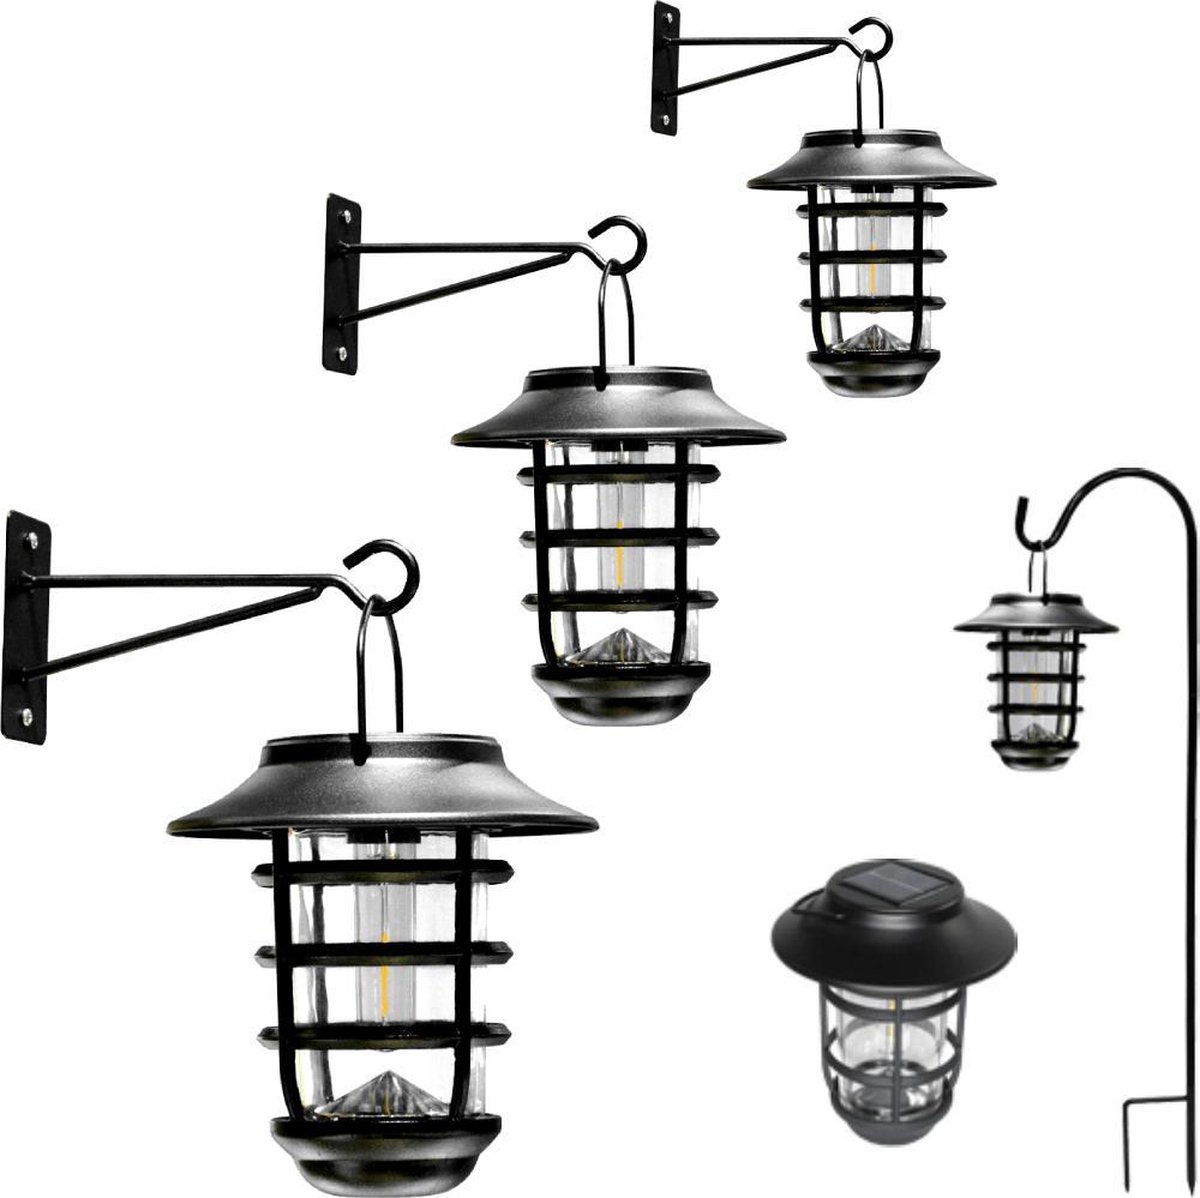 Solar wandlamp 'Sting' - Voordeelset 3 stuks - Trendy zwart - Metaal - Met schemersensor - Buitenlampen zonne-energie